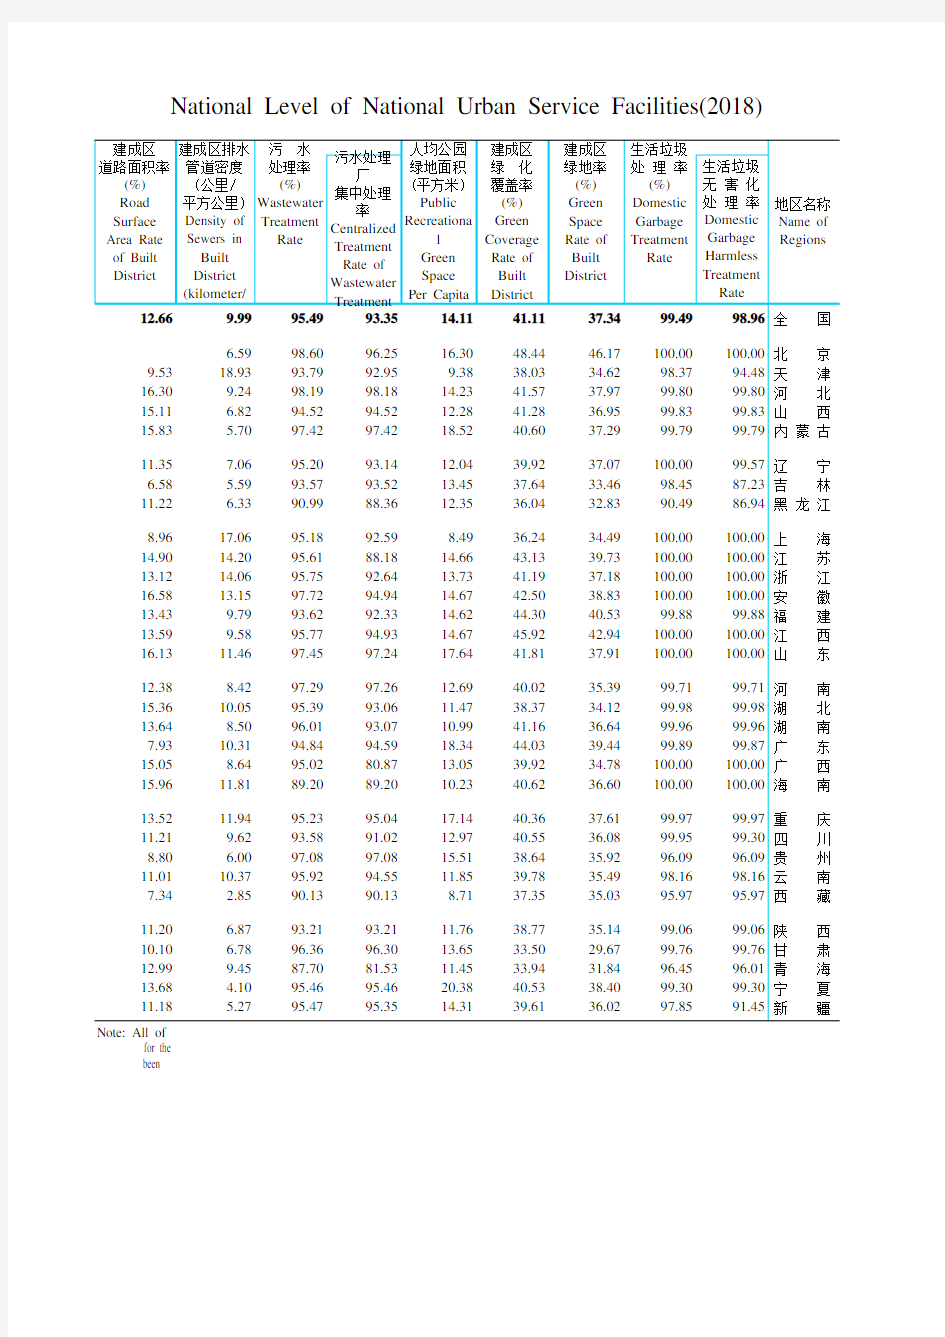 中国城市乡村建设统计年鉴数据：1-2-1  全国城市市政公用设施水平(2018年)